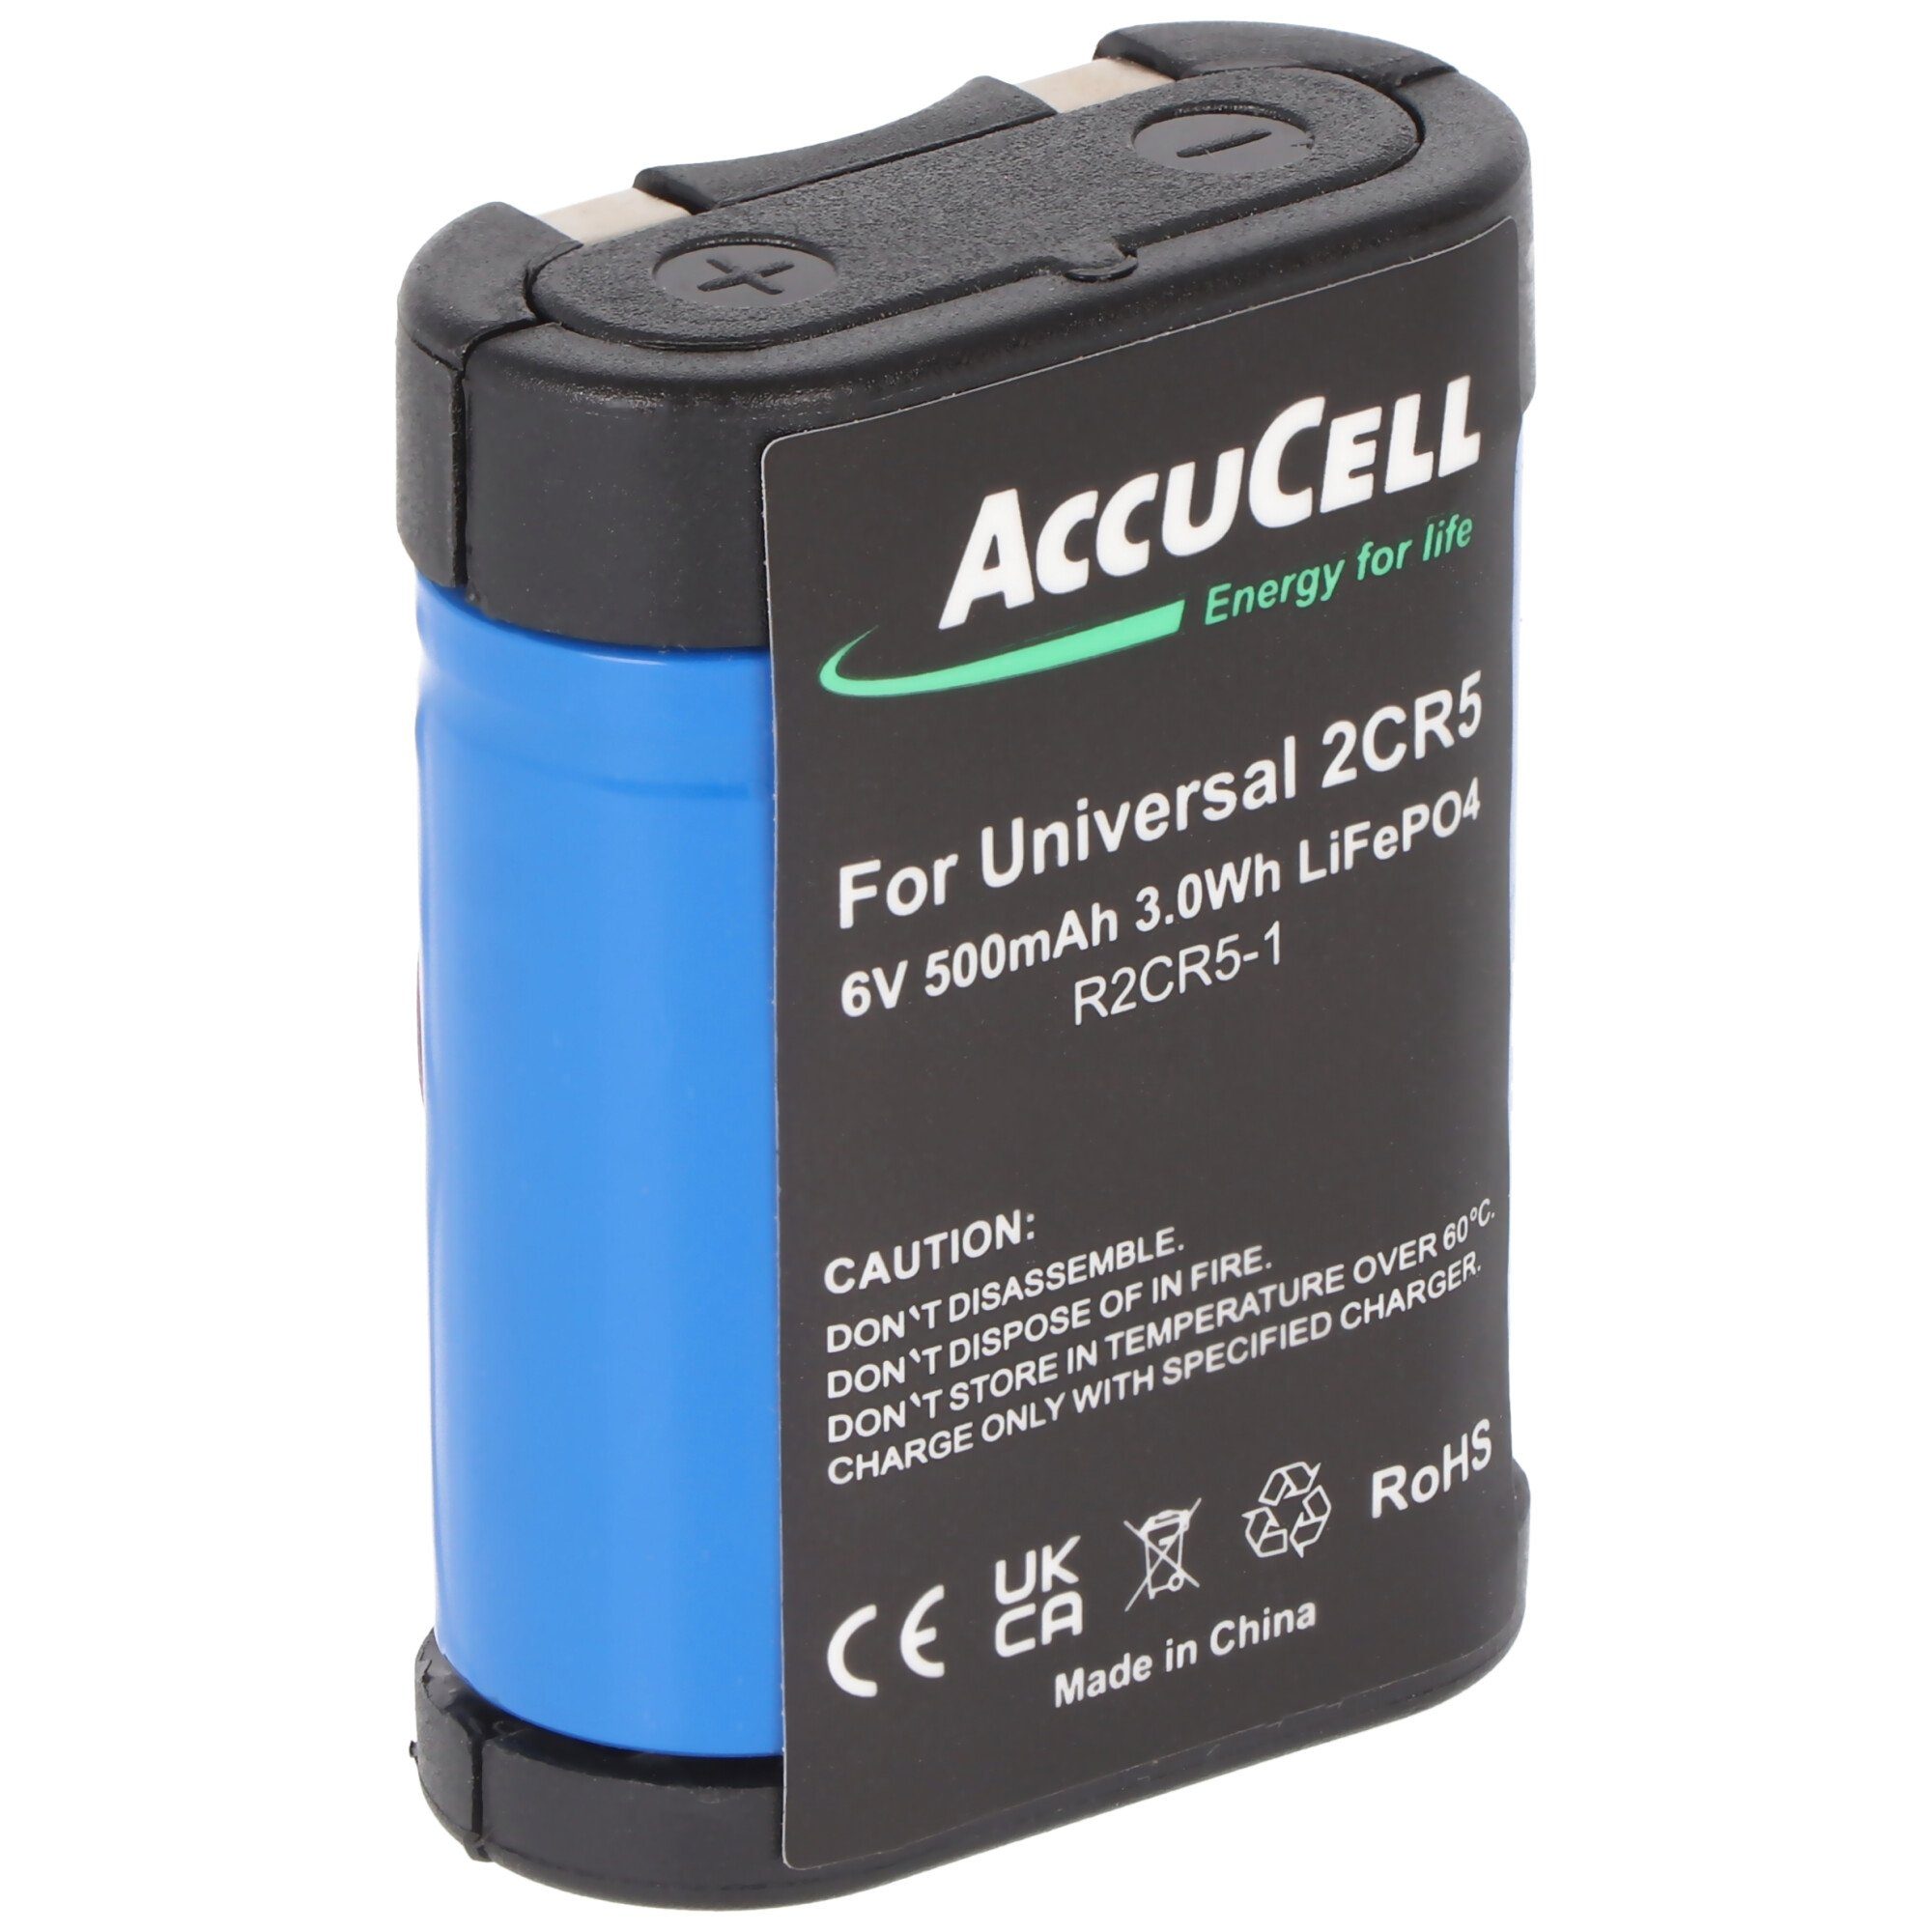 AccuCell Akku passend für 2CR5 Li-Ion Akku Typ 2-CR5, 2CR5M 1 Stück ohne Ladeg Akku 500 mAh (6,0 V)